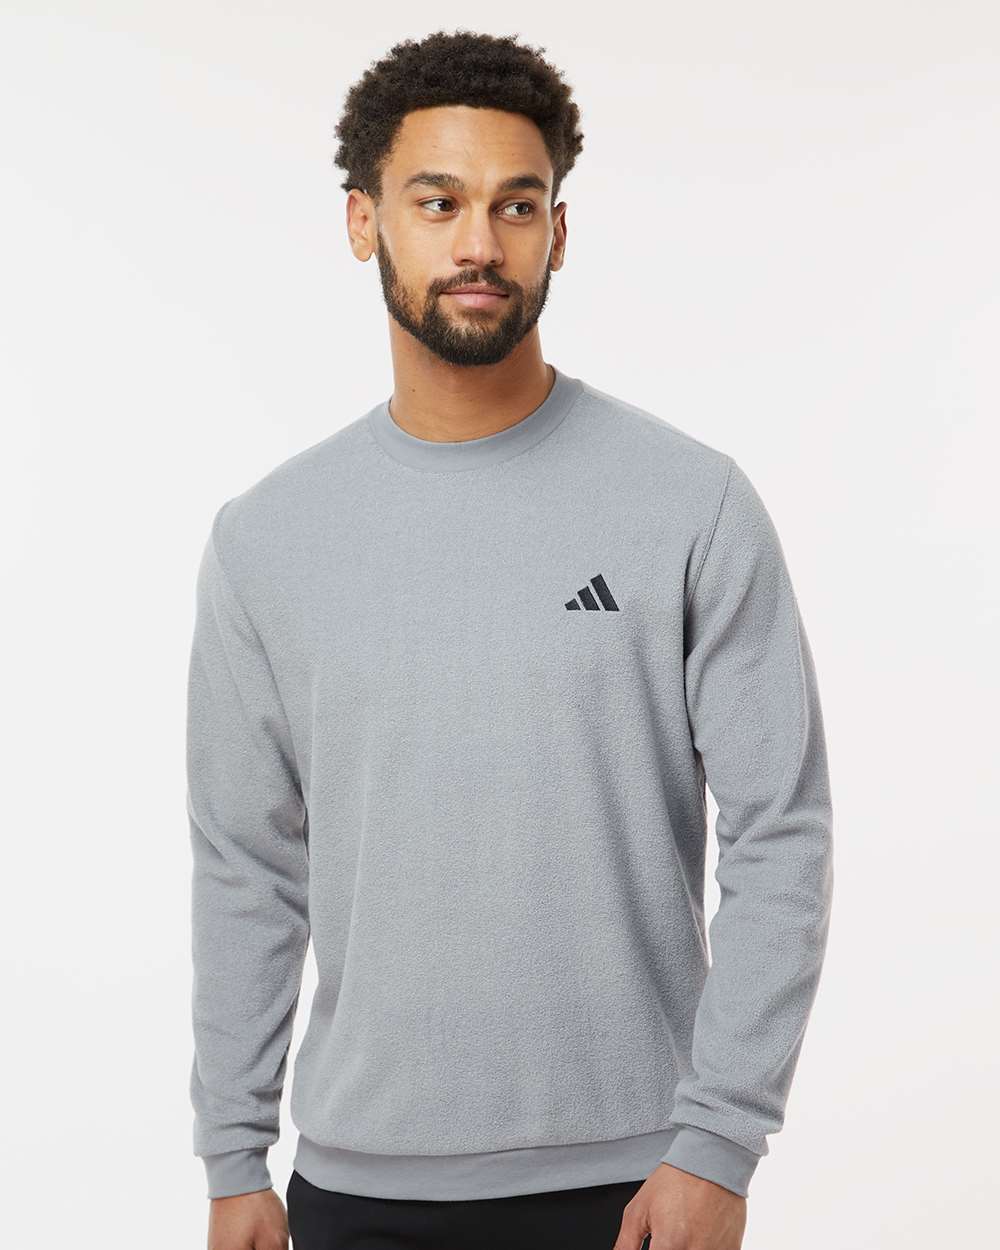 Adidas A586 Crewneck Sweatshirt #colormdl_Grey Three